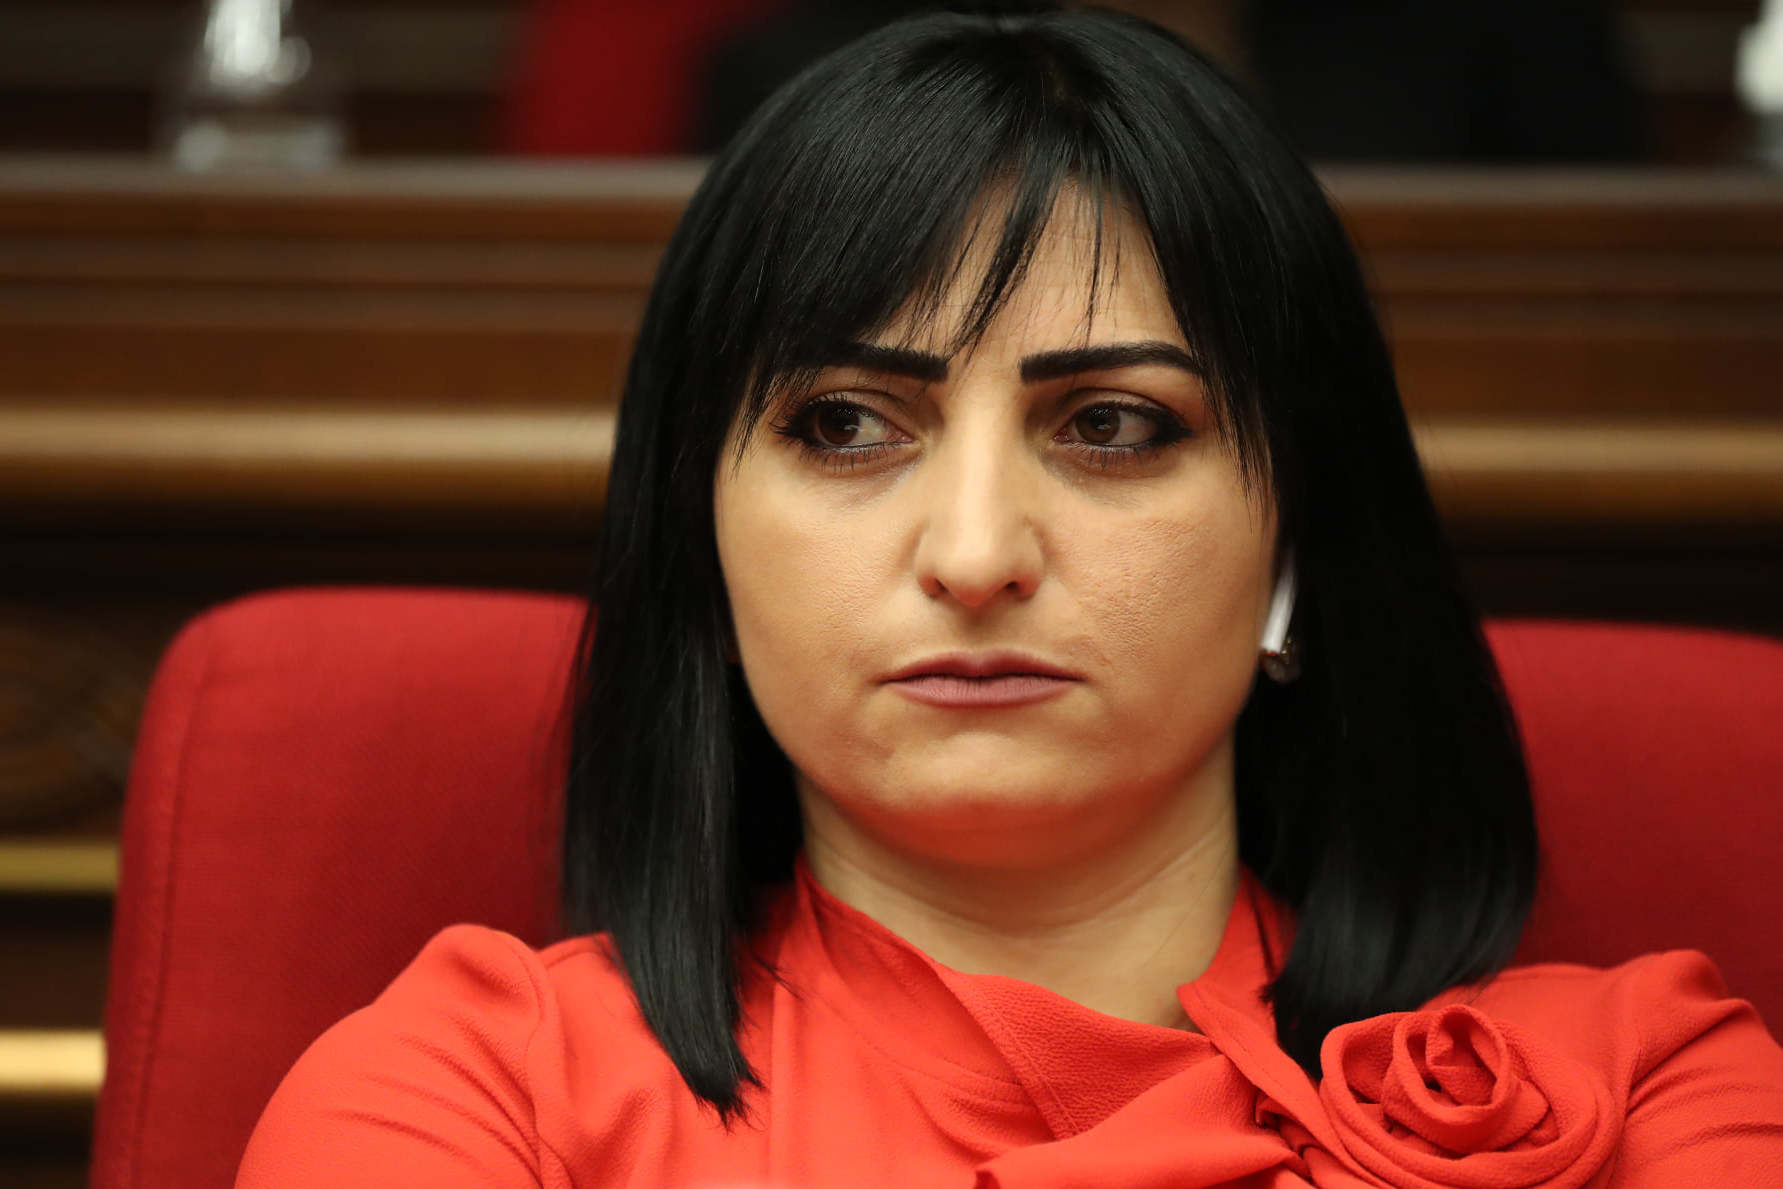 ԵԱՀԿ ԽՎ նախագահը պատասխանել է Արցախում Ադրբեջանի հանցավոր գործողությունների վերաբերյալ Թագուհի Թովմասյանի նամակին